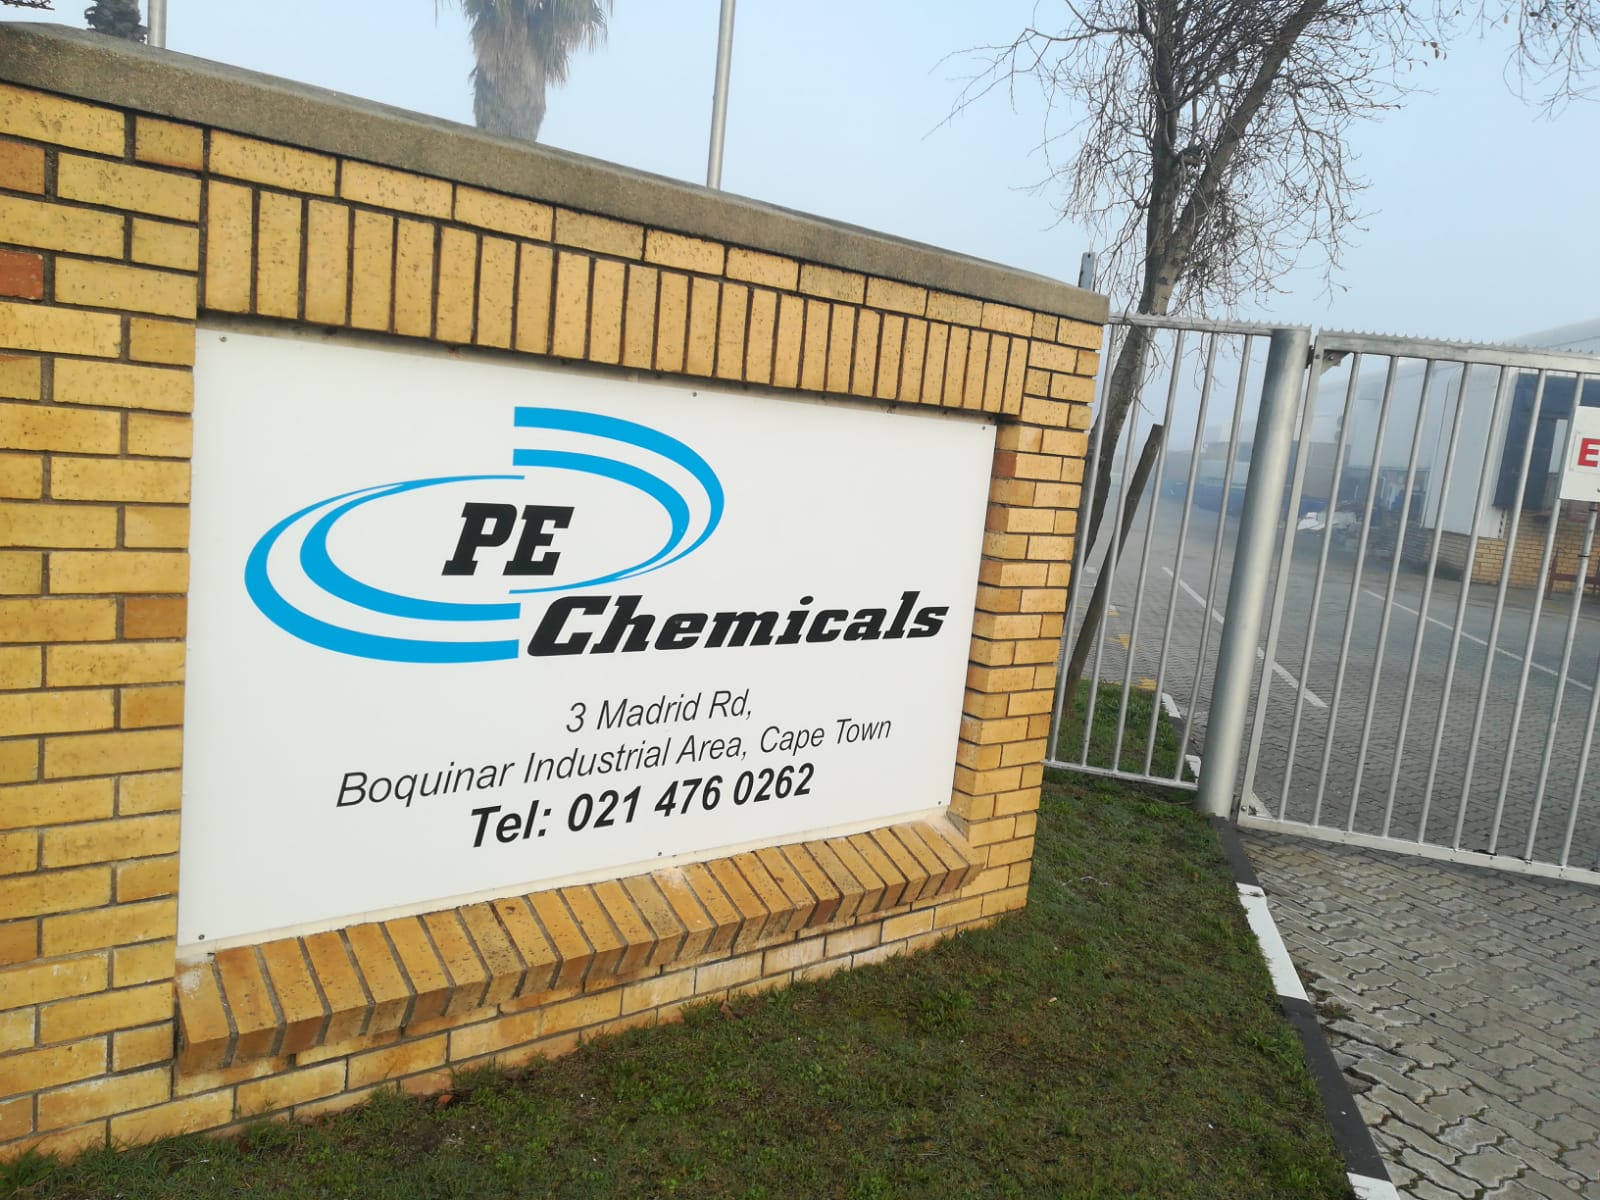 PE Chemicals